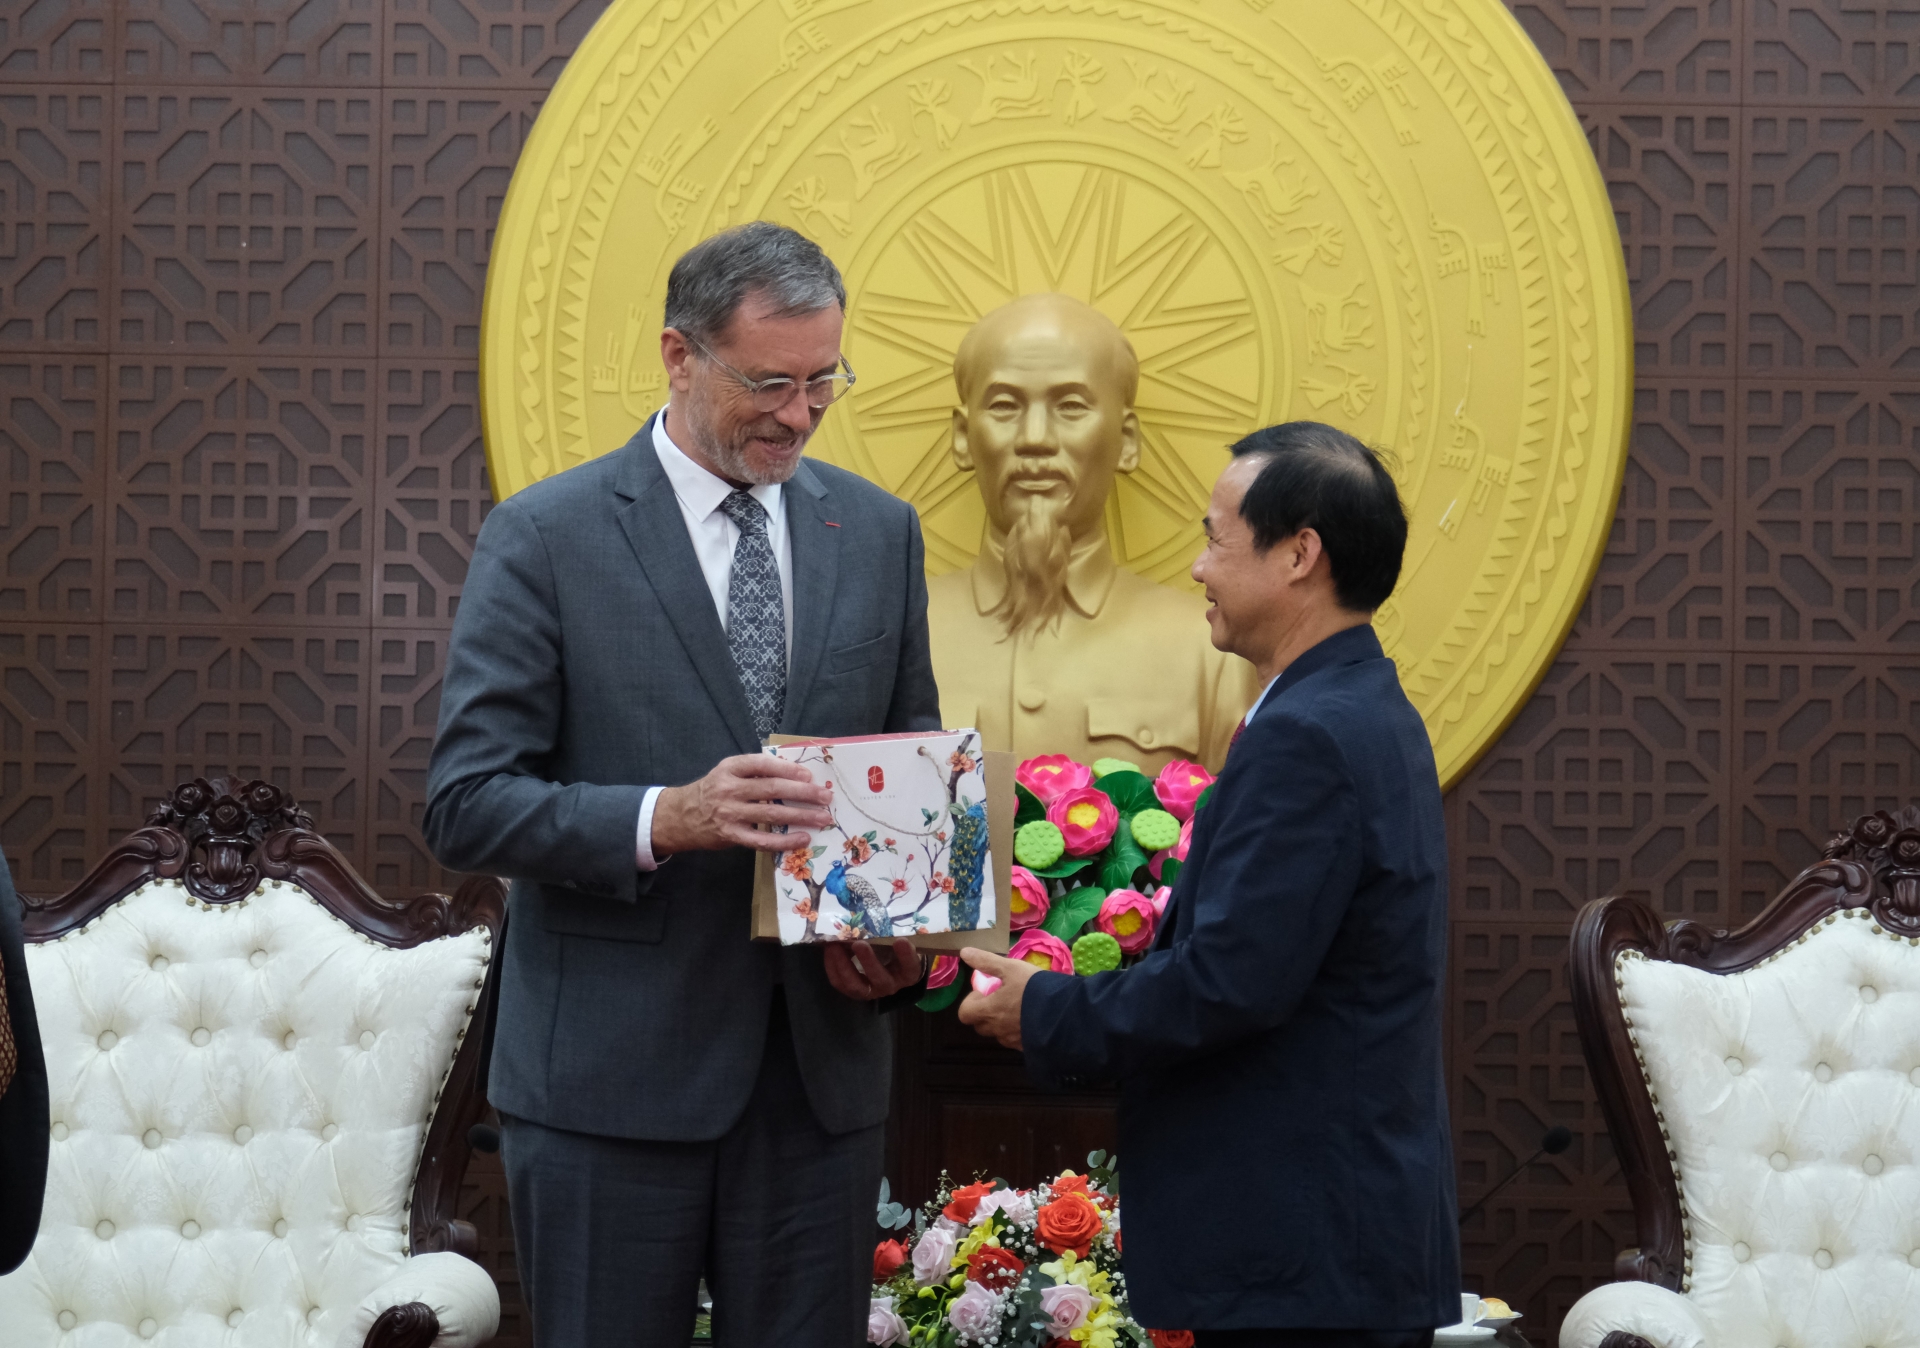 Quyền Bí thư Tỉnh ủy Lâm Đồng Nguyễn Thái Học tặng quà lưu niệm cho Ngài Đại sứ nước Cộng hòa Pháp tại Việt Nam